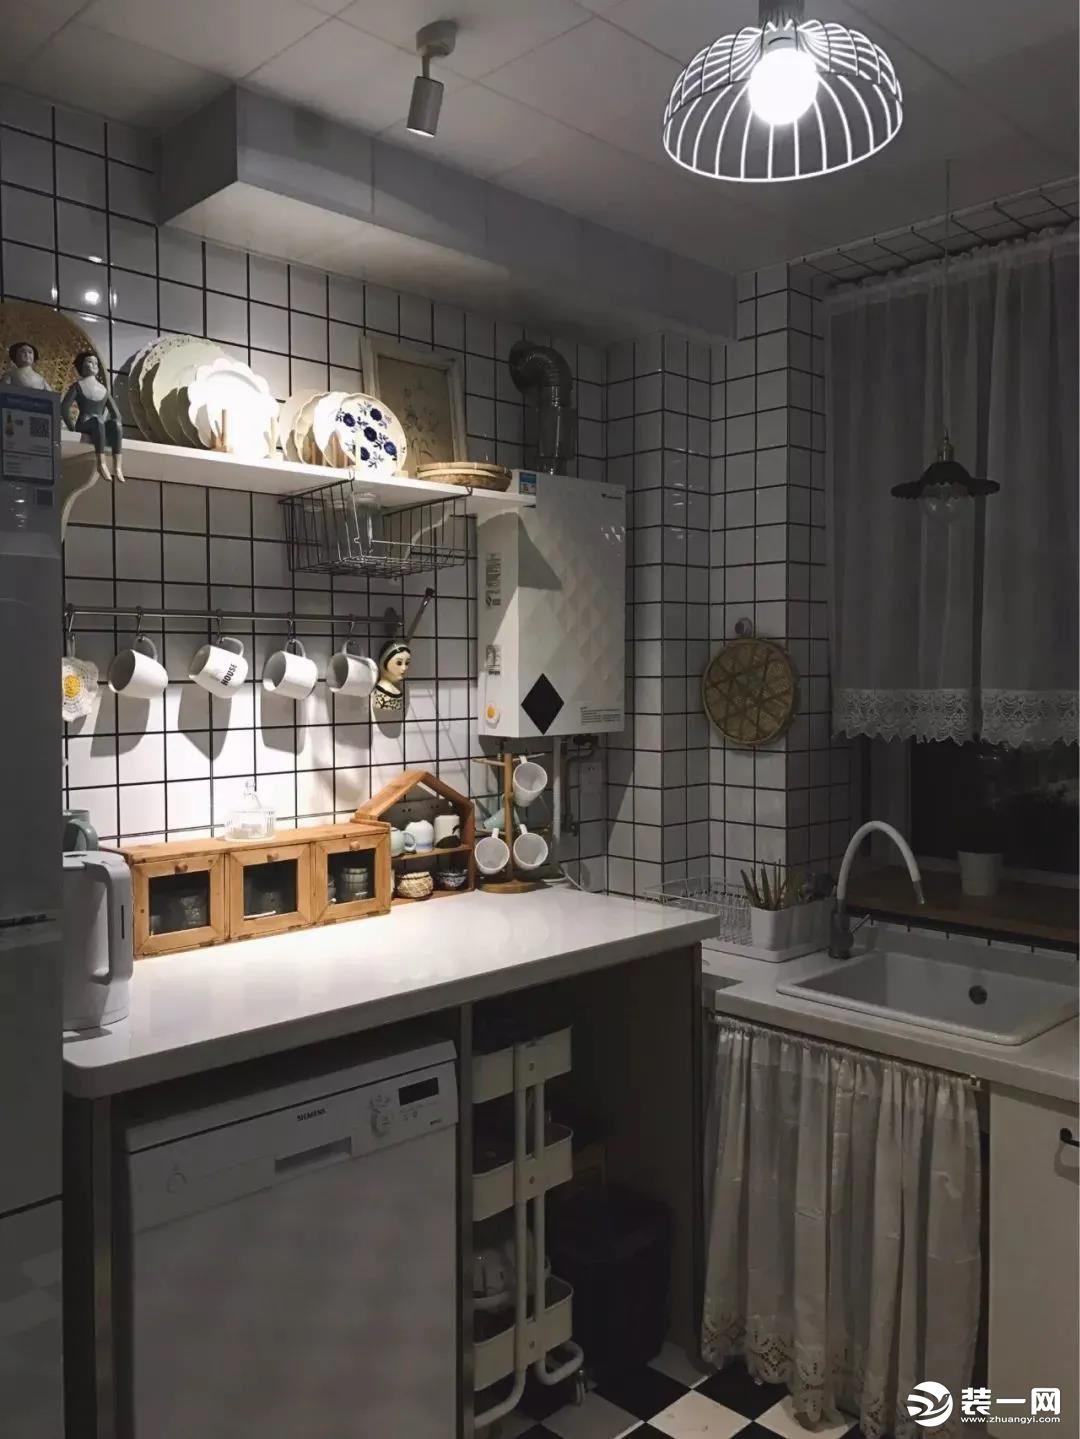 厨房橱柜底部留白设计效果图